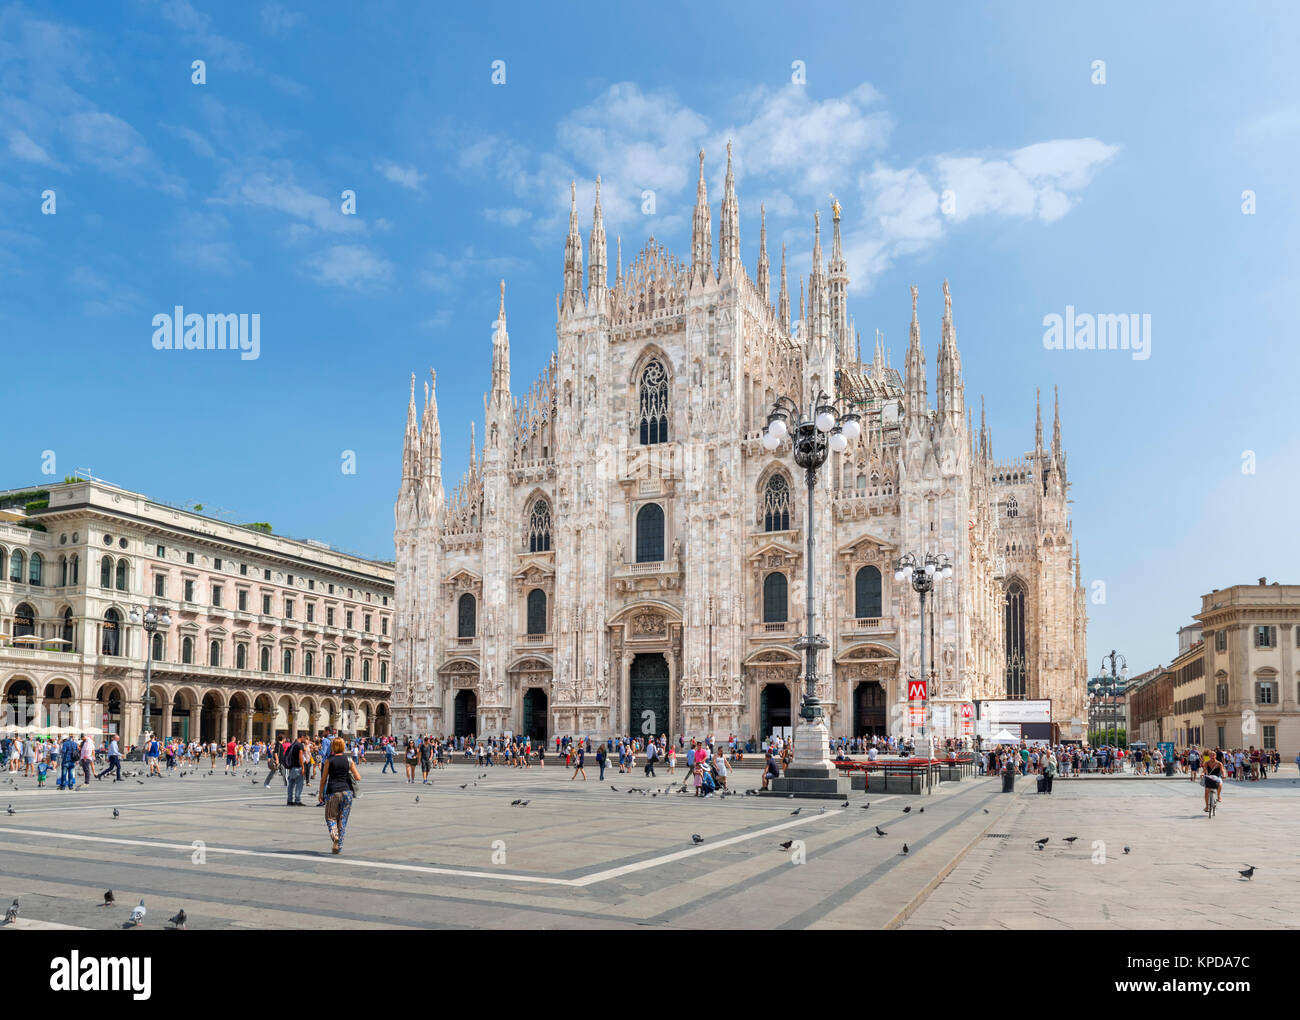 La cathédrale de Milan (Duomo di Milano) à partir de la Piazza del Duomo, Milan, Lombardie, Italie Banque D'Images